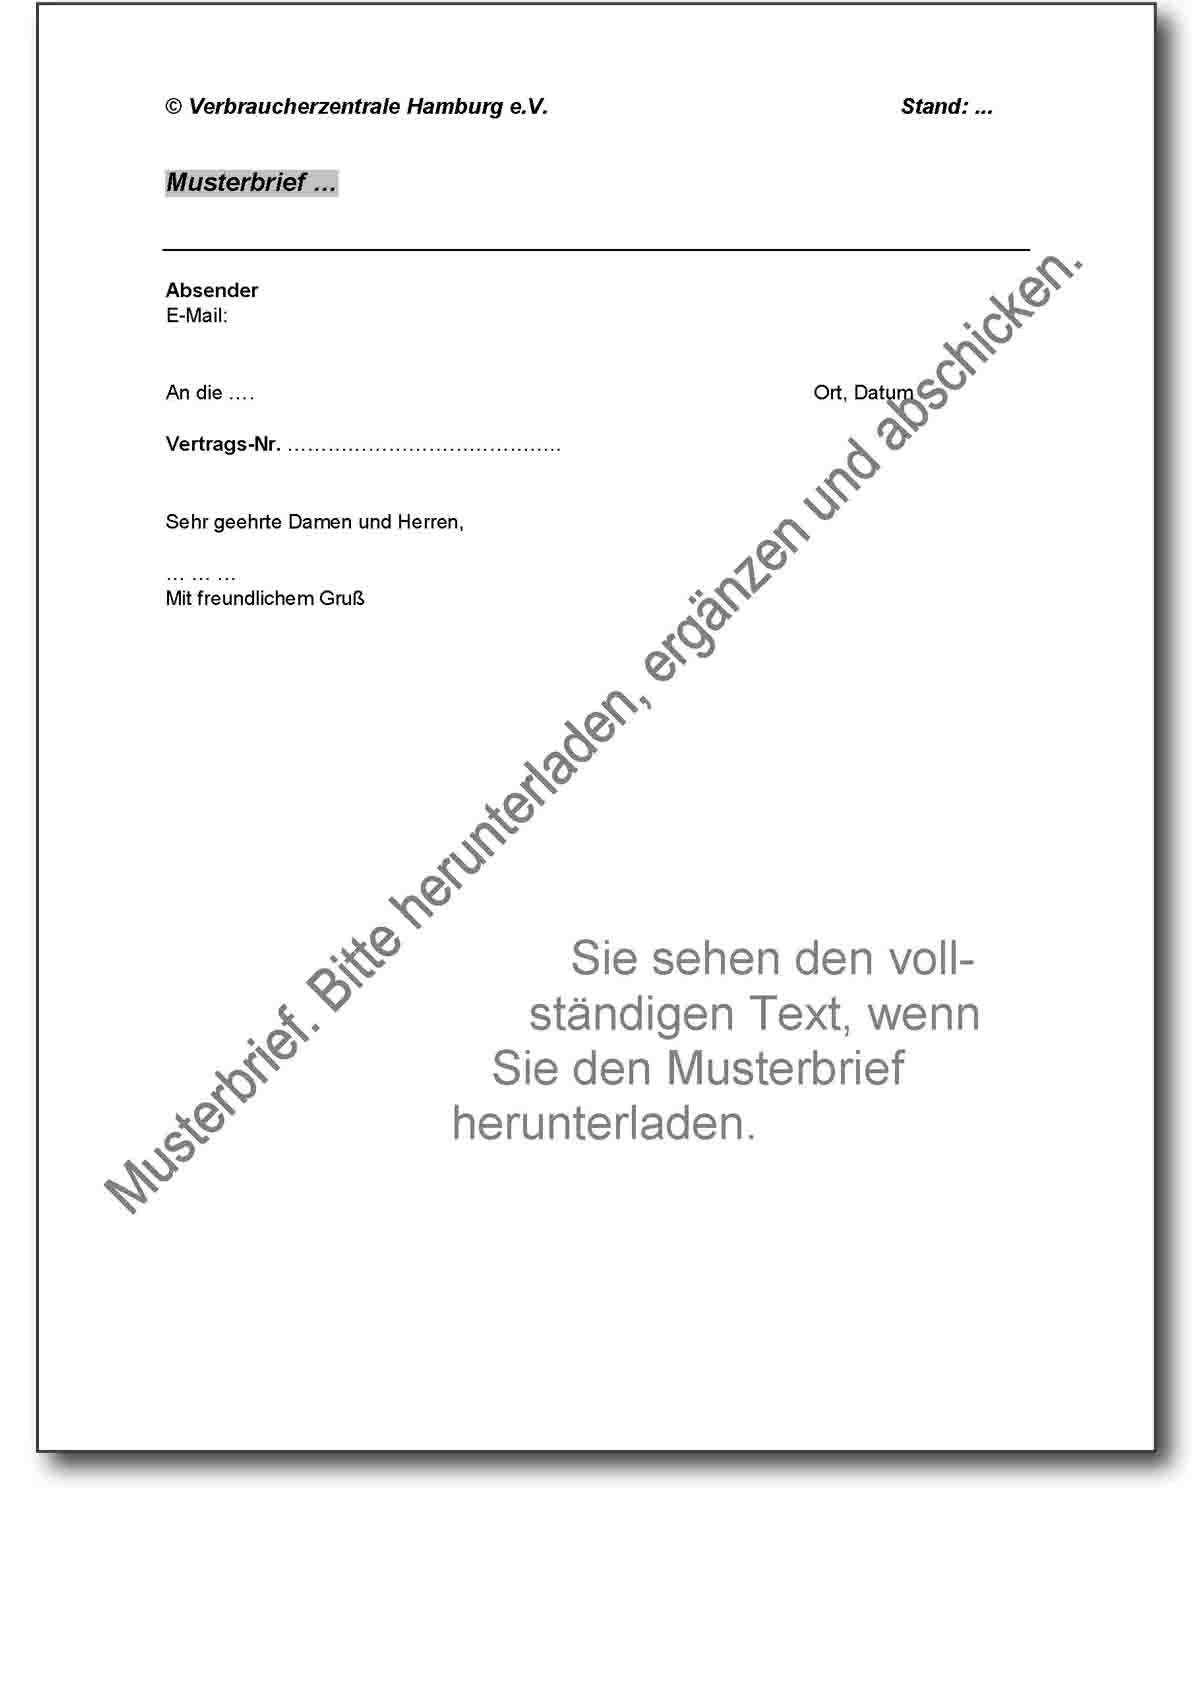 Musterbrief - Schadensersatz für verspätete Gutschrift - Verbraucherzentrale Hamburg